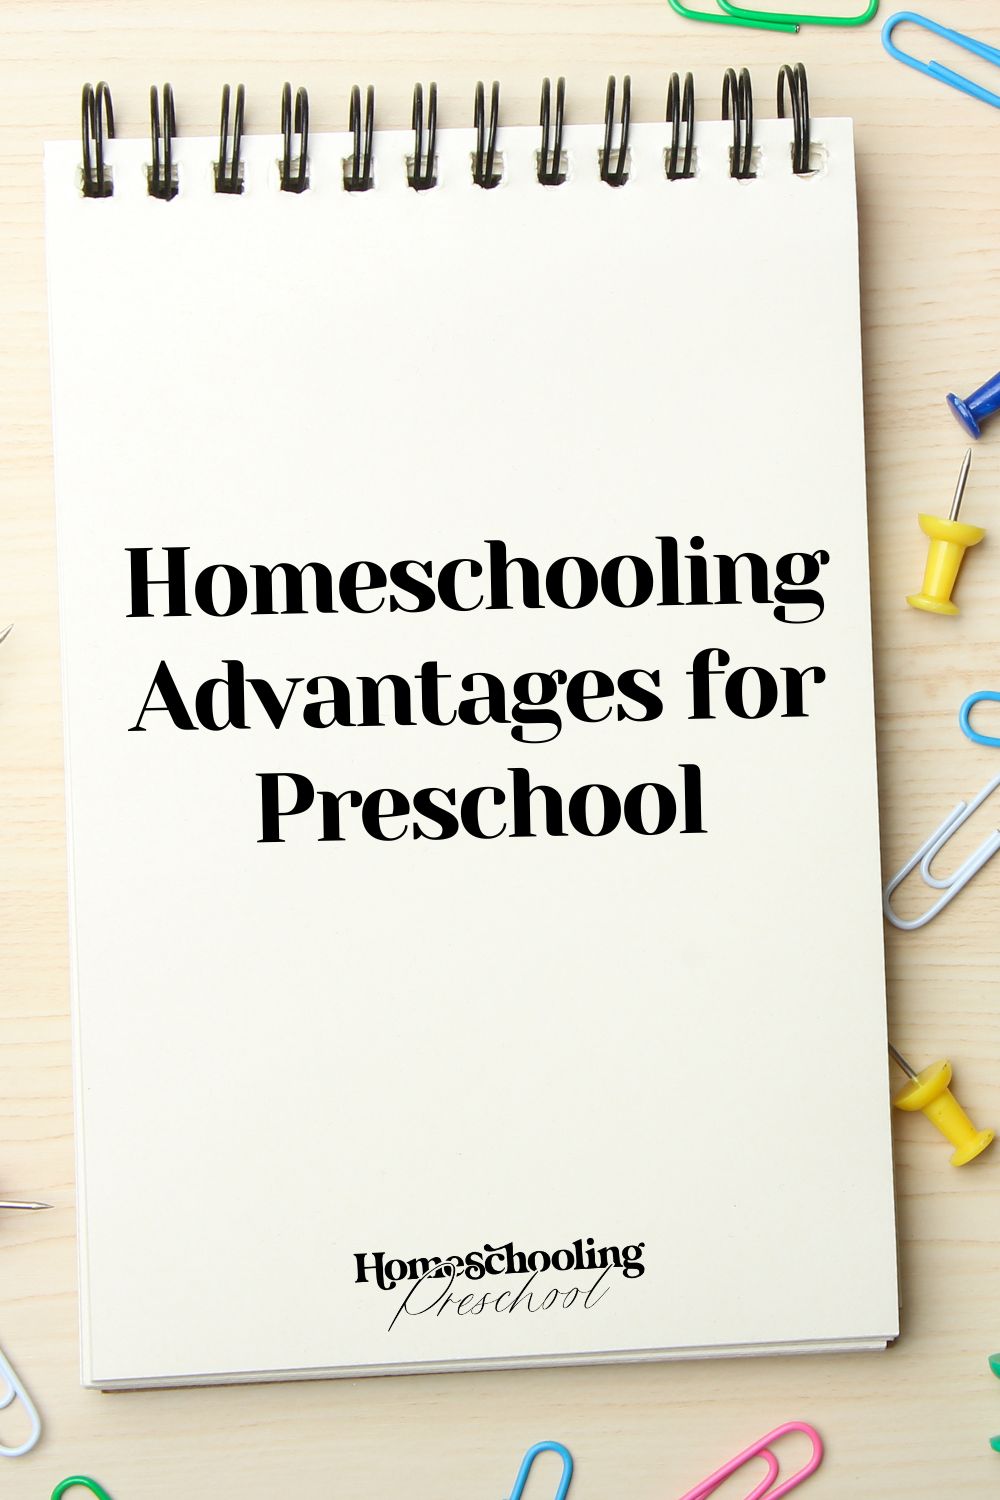 Homeschooling Advantages for Preschool